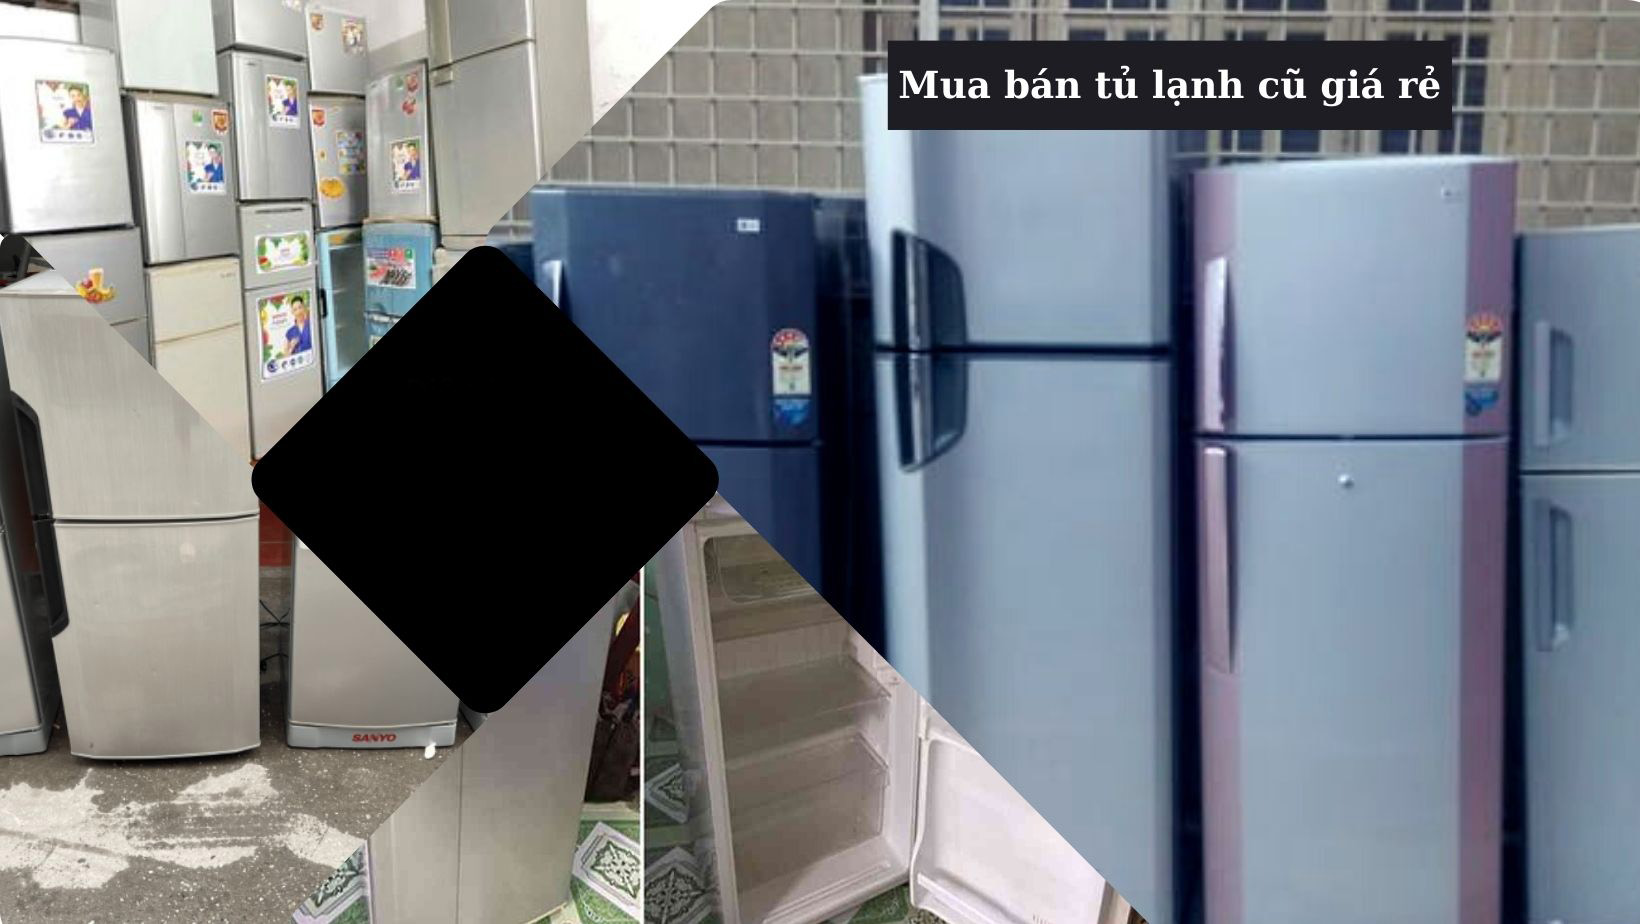 Mua tủ lạnh cũ giá rẻ tại Đà Nẵng 